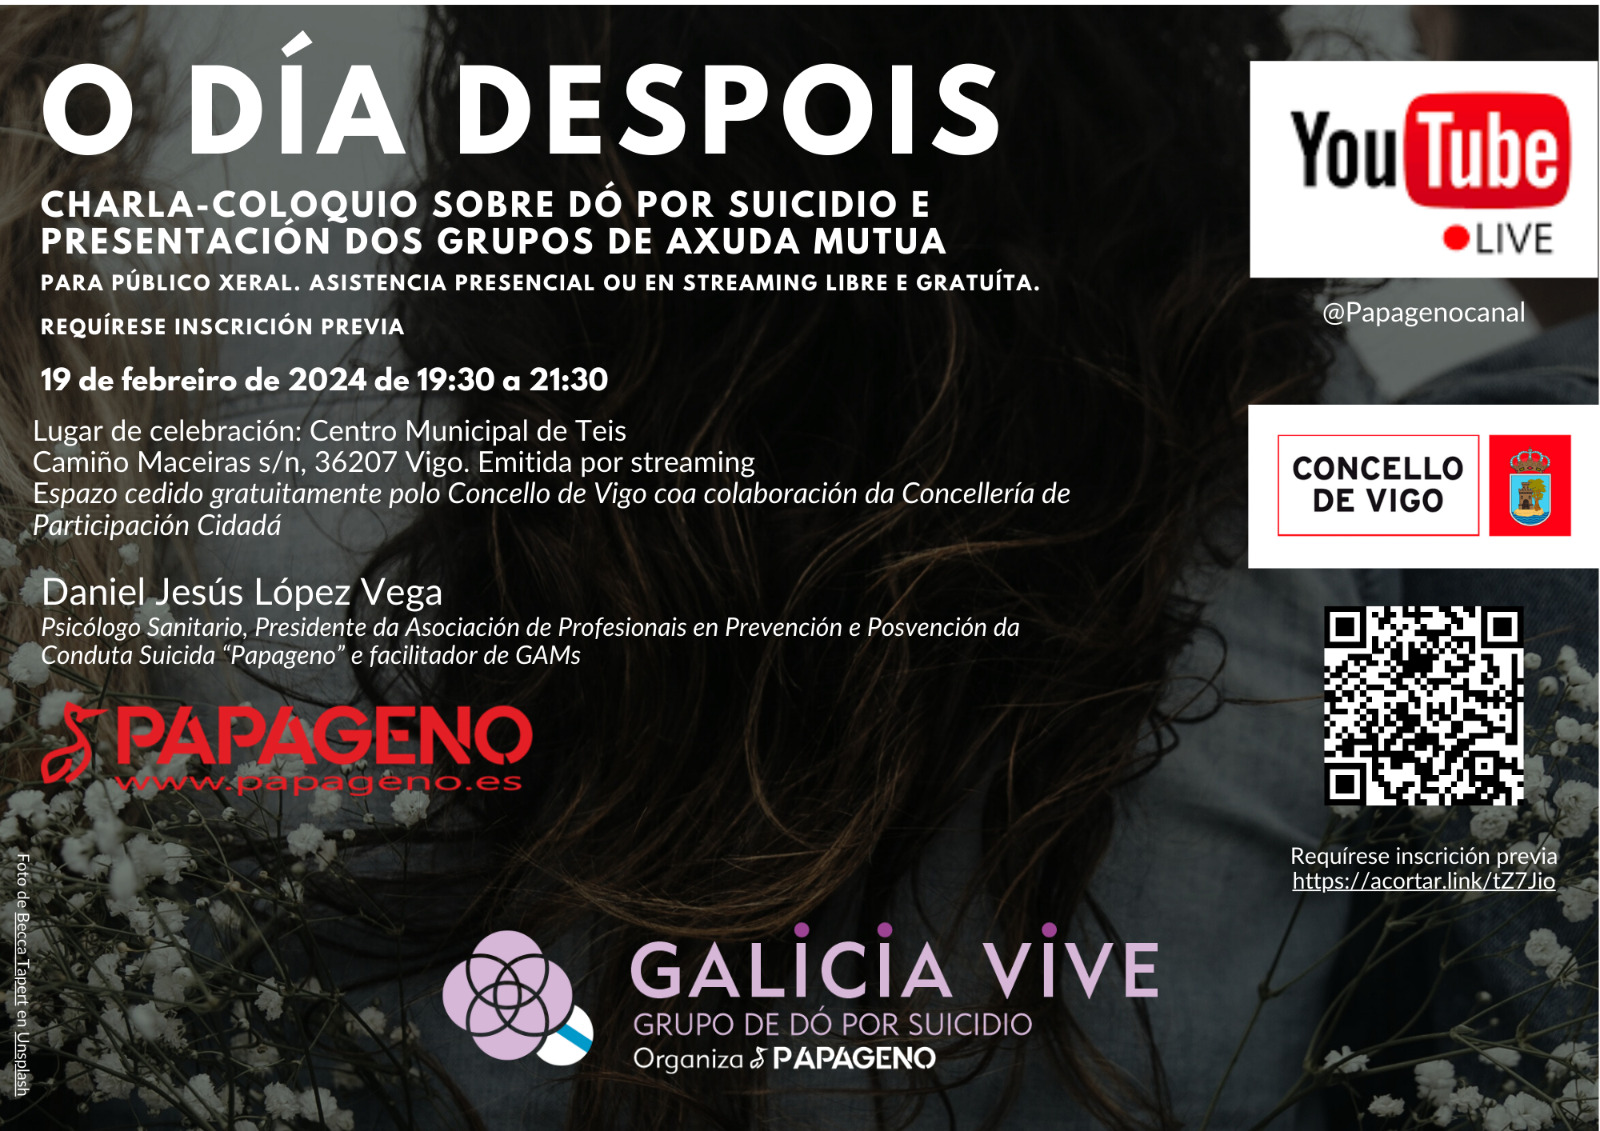 Papageno organiza hoy un acto sobre el duelo por suicidio en Vigo